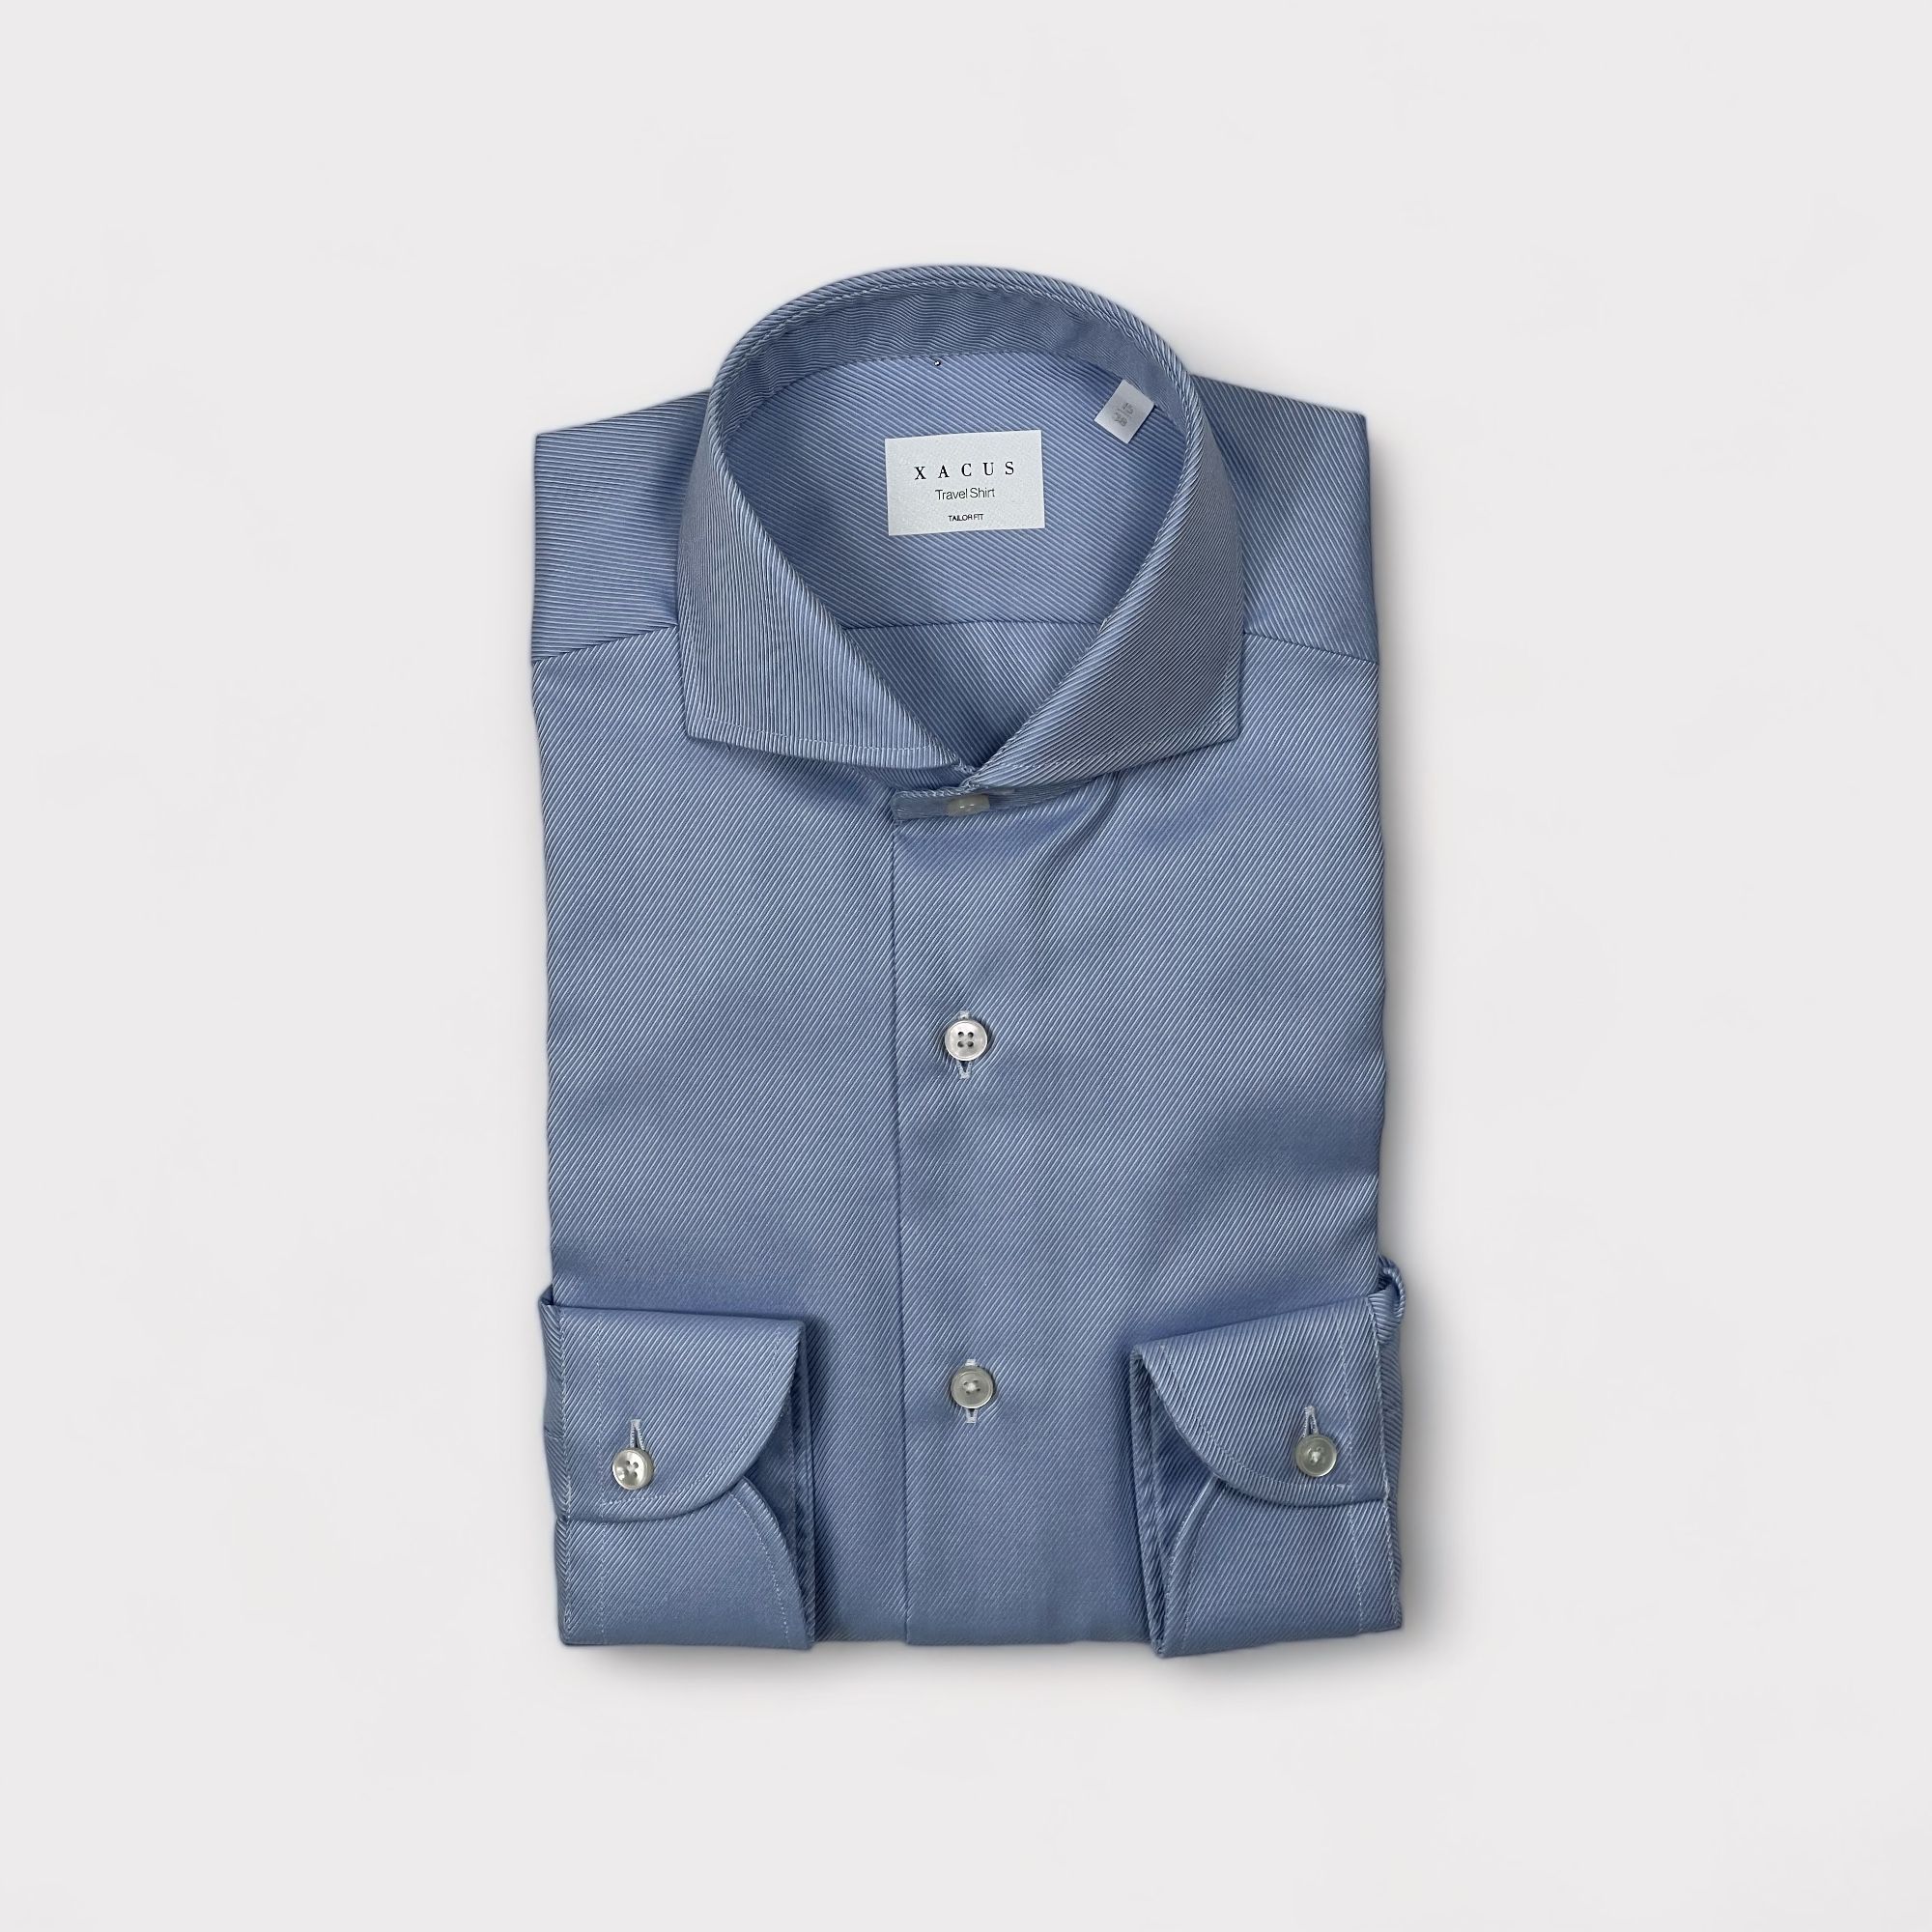 Xacus - Camicia con collo francese in puro cotone armaturato diagonale